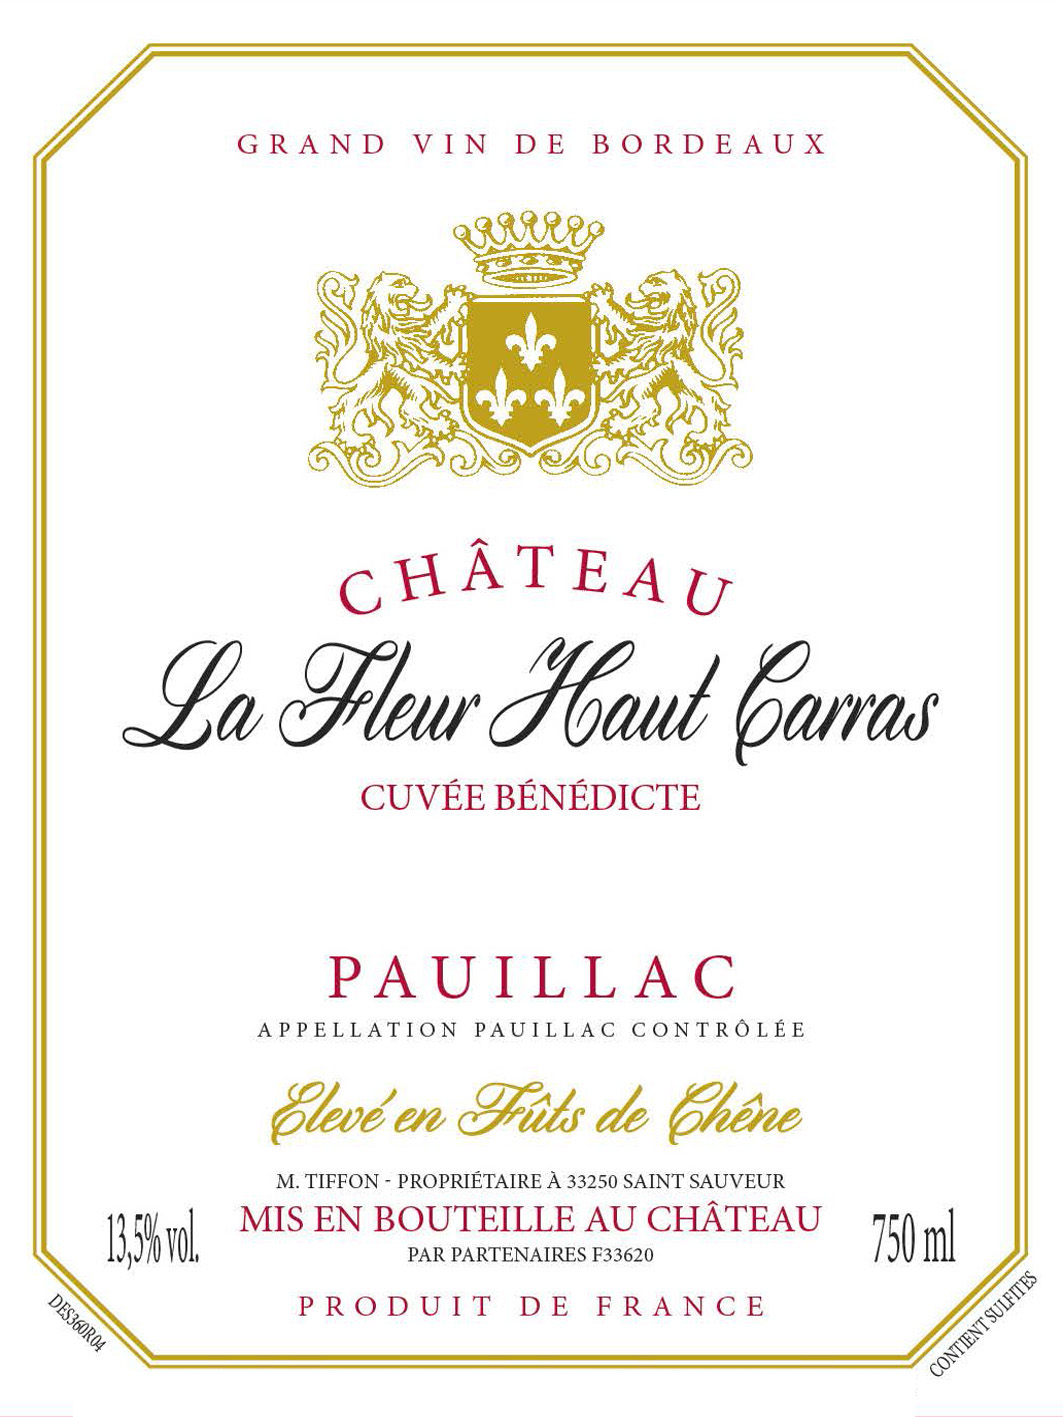 Chateau La Fleur Haut Carras label